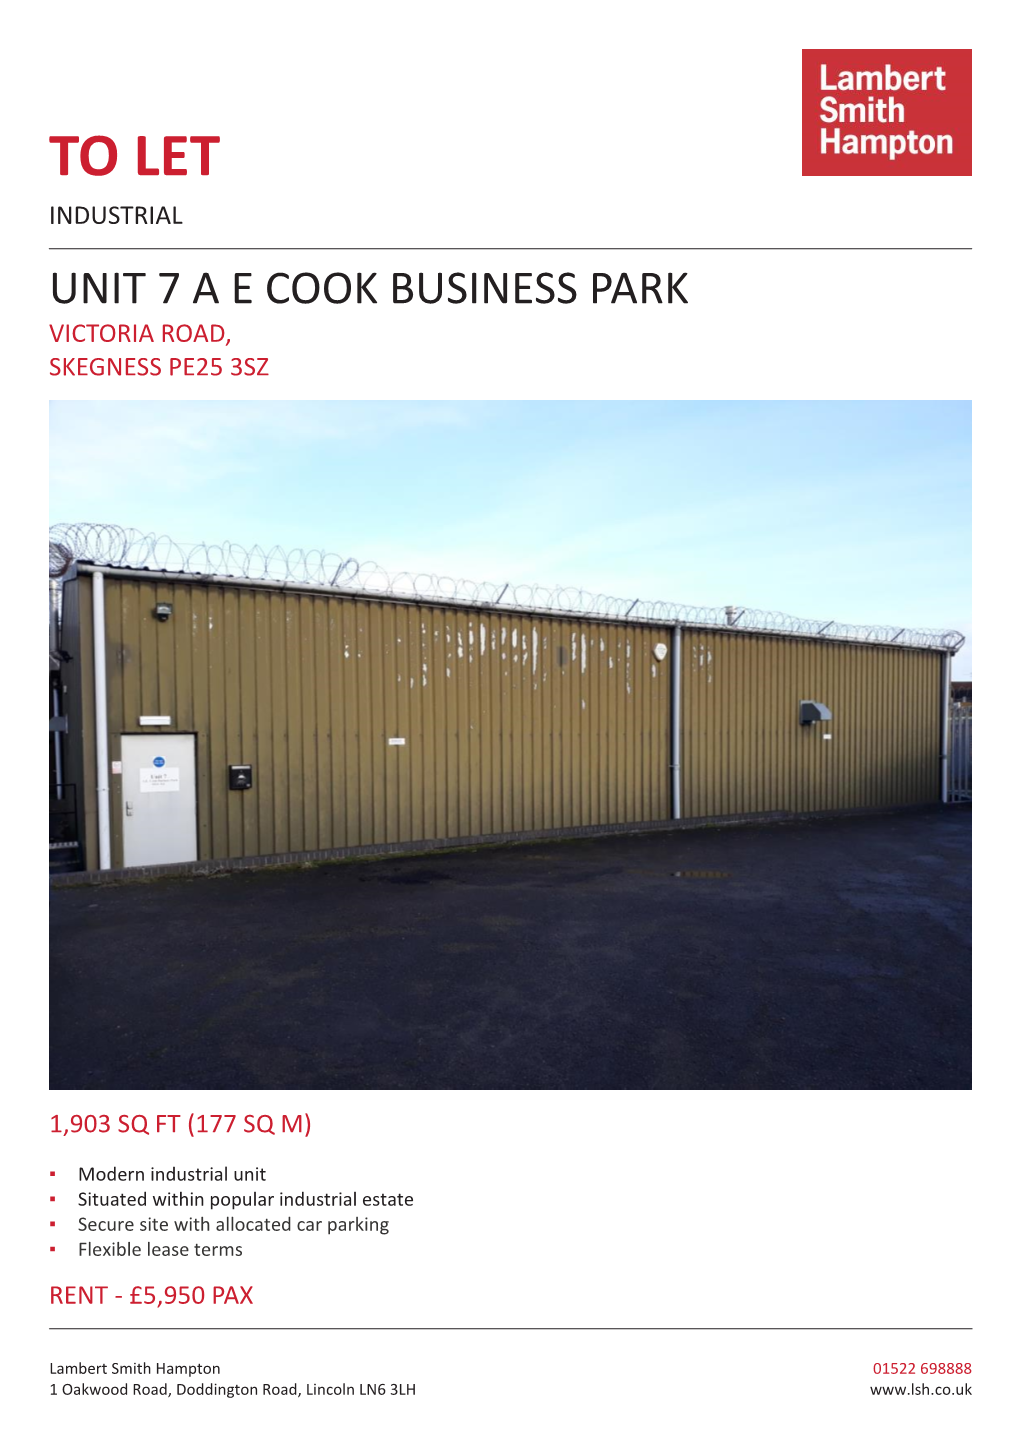 To Let Industrial Unit 7 a E Cook Business Park Victoria Road, Skegness Pe25 3Sz